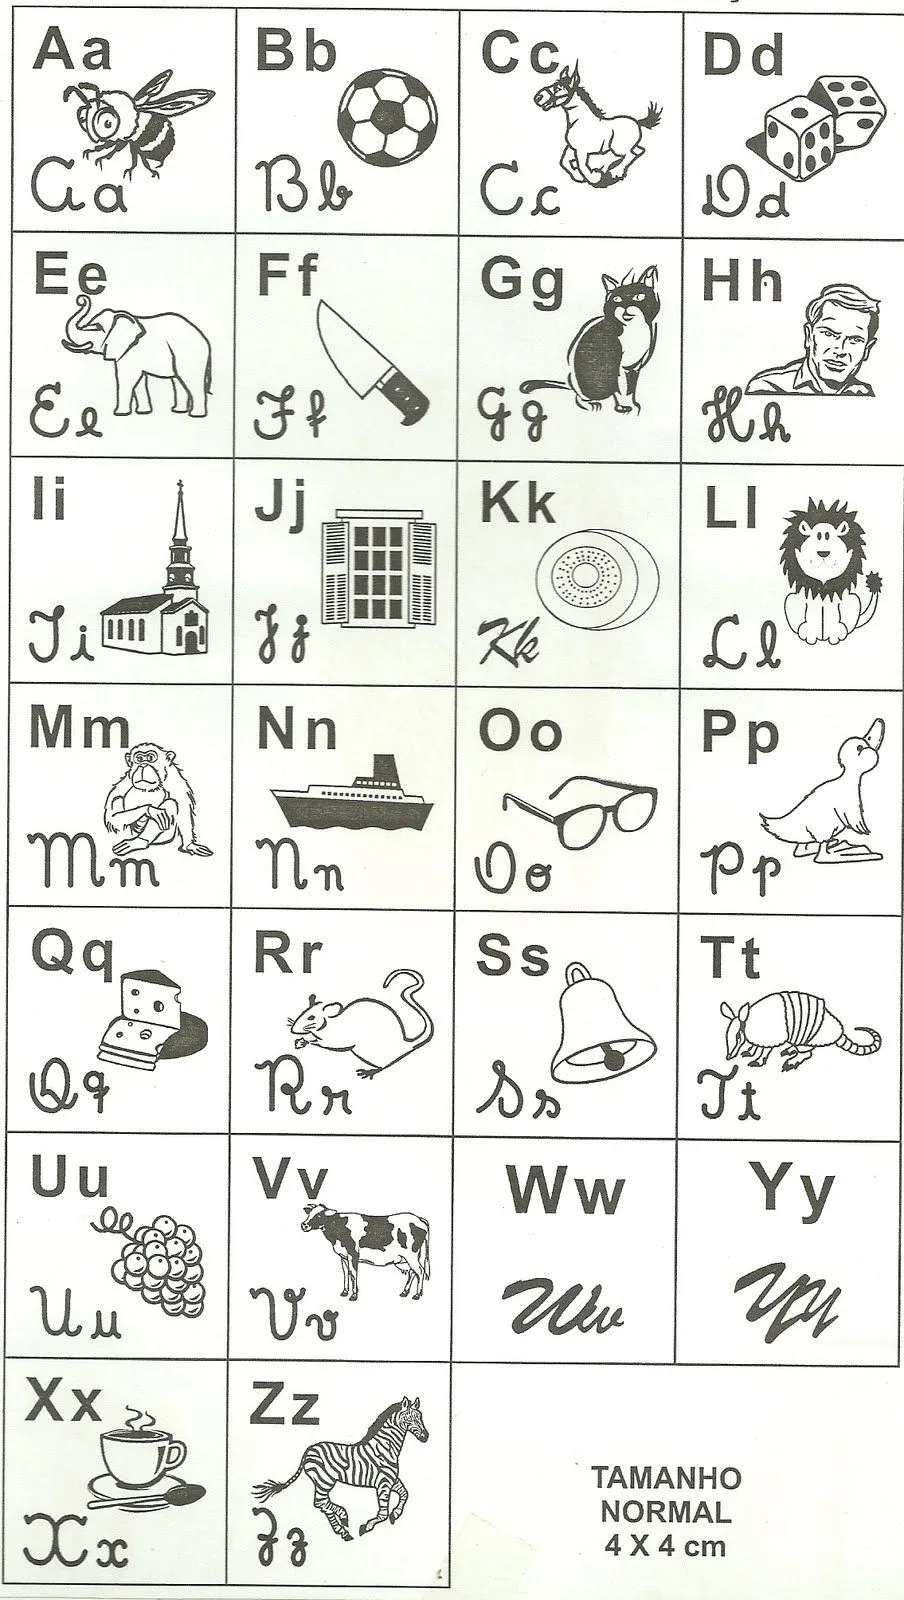 Criando e Recontando: Alfabeto Ilustrado